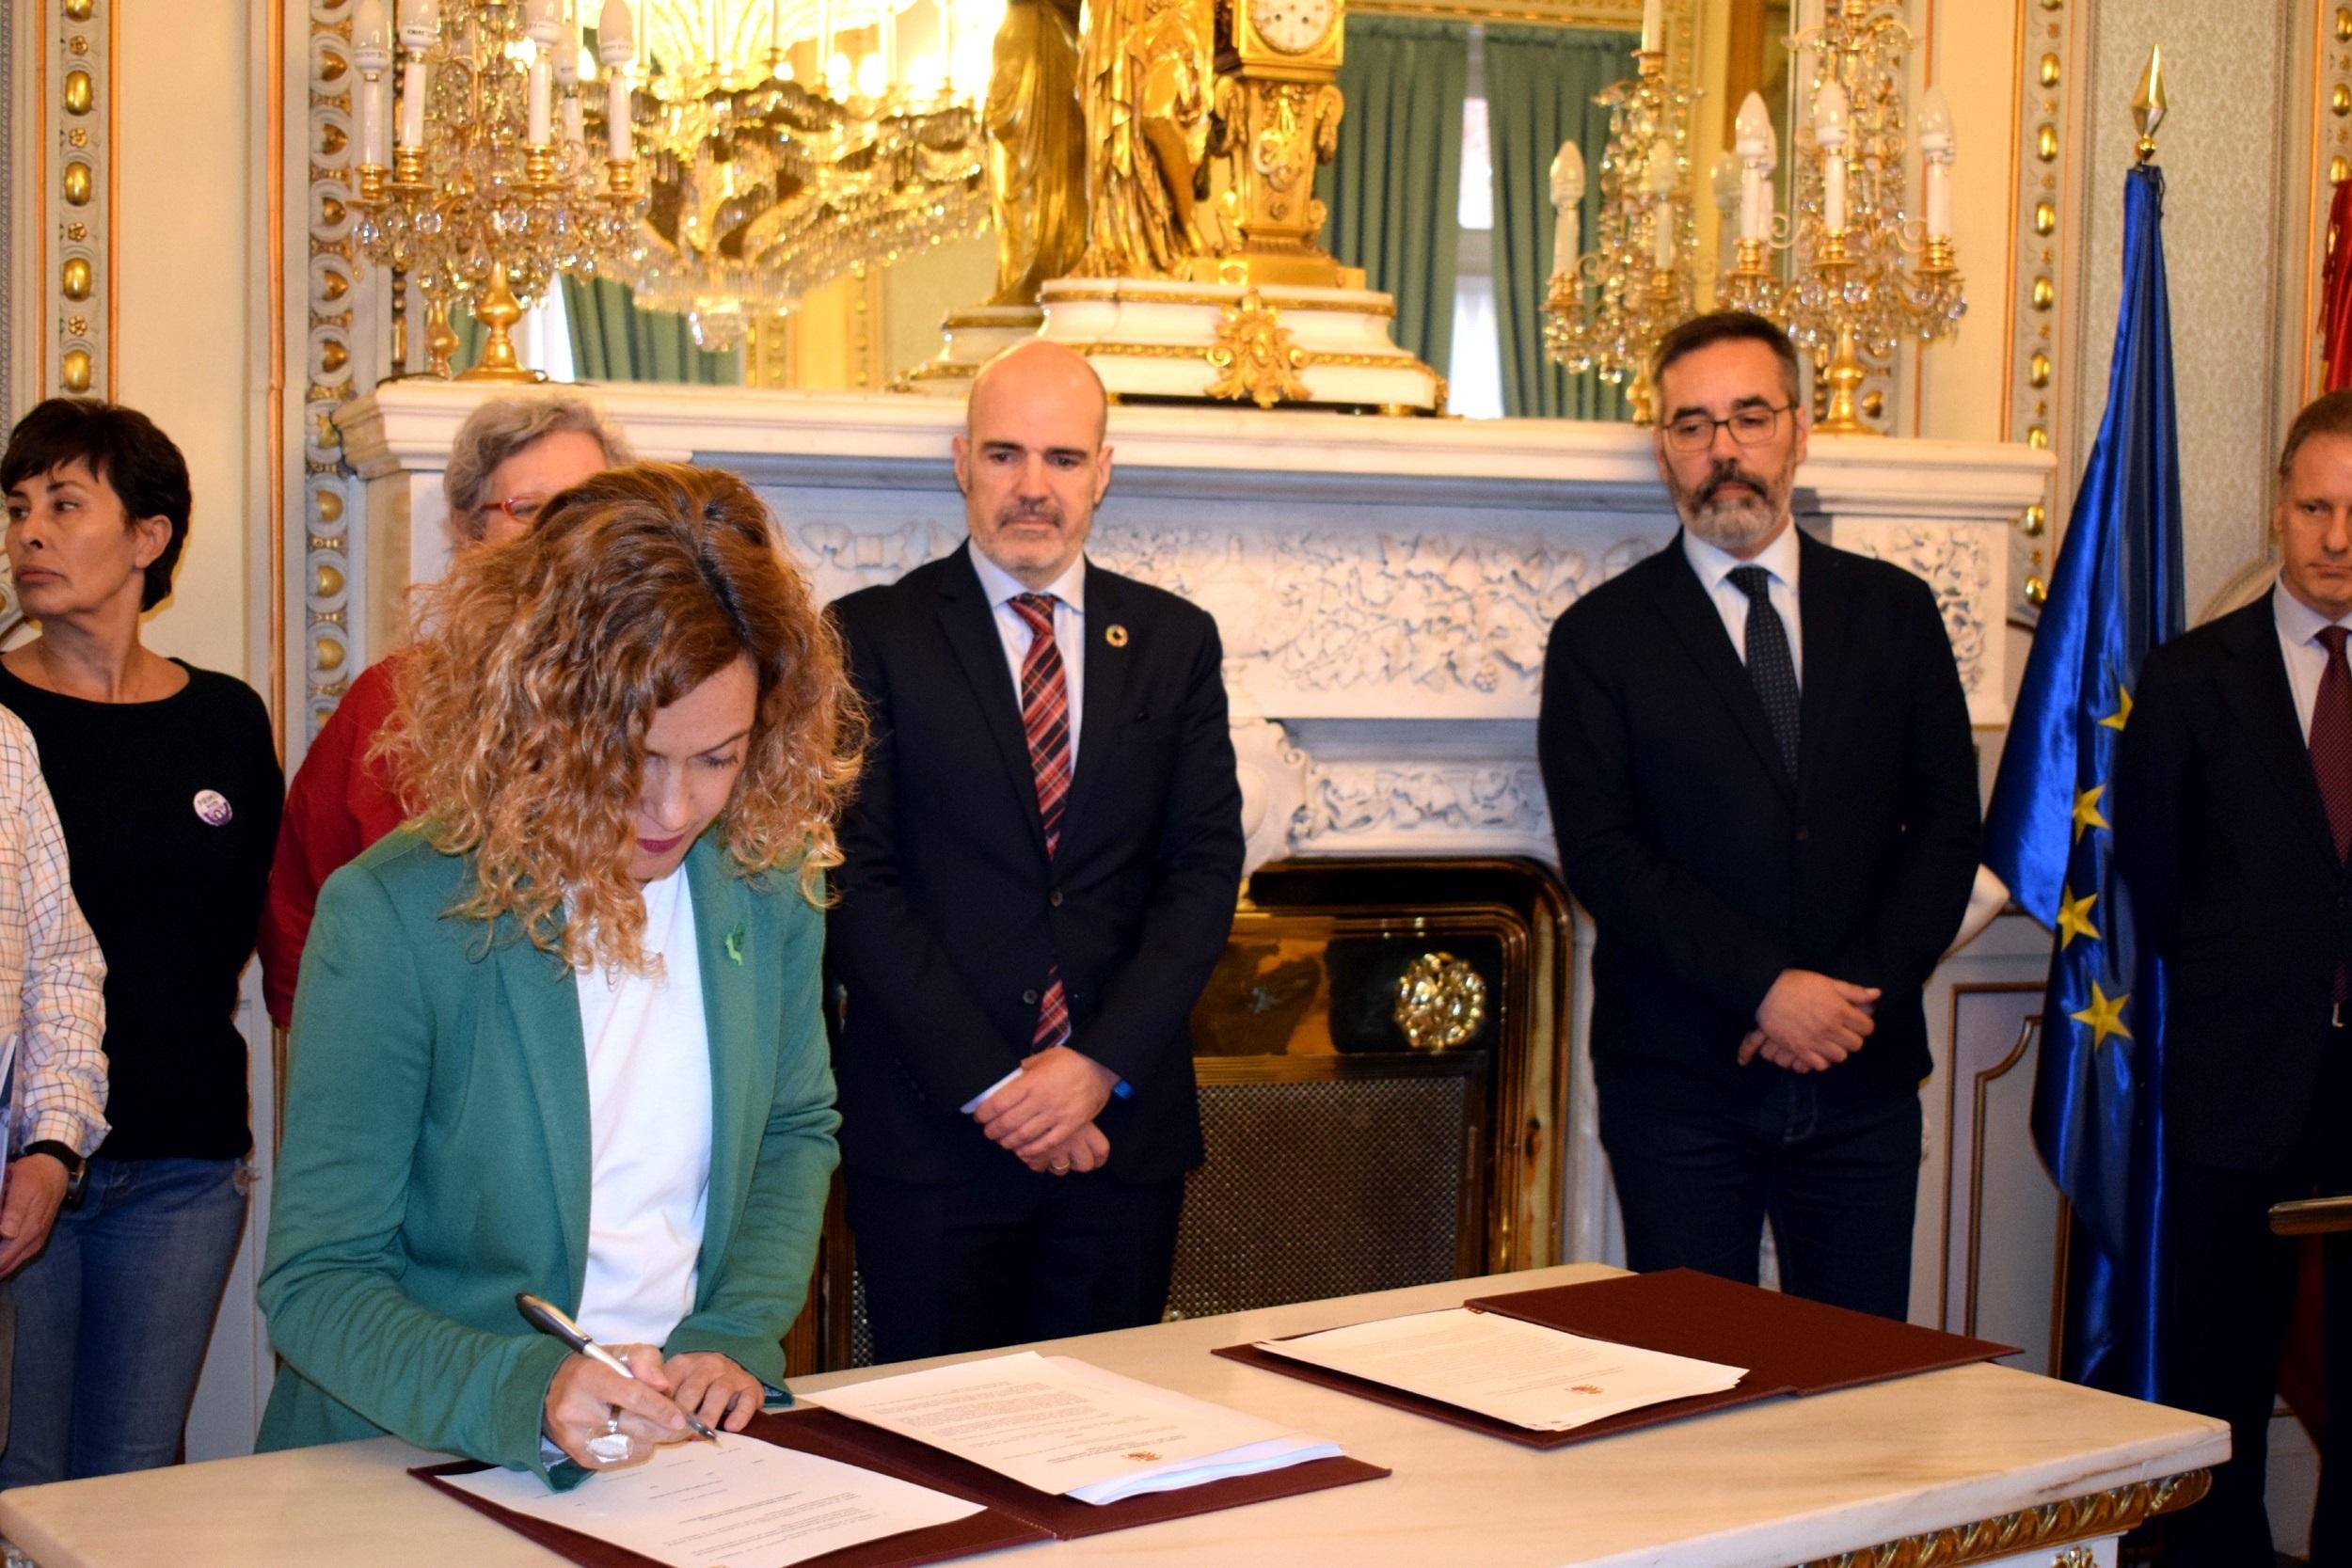  La ministra de Política Territorial Meritxell Batet firma con los sindicatos el IV Convenio Único para el personal laboral de la Administración - Ministerio de Política Territorial